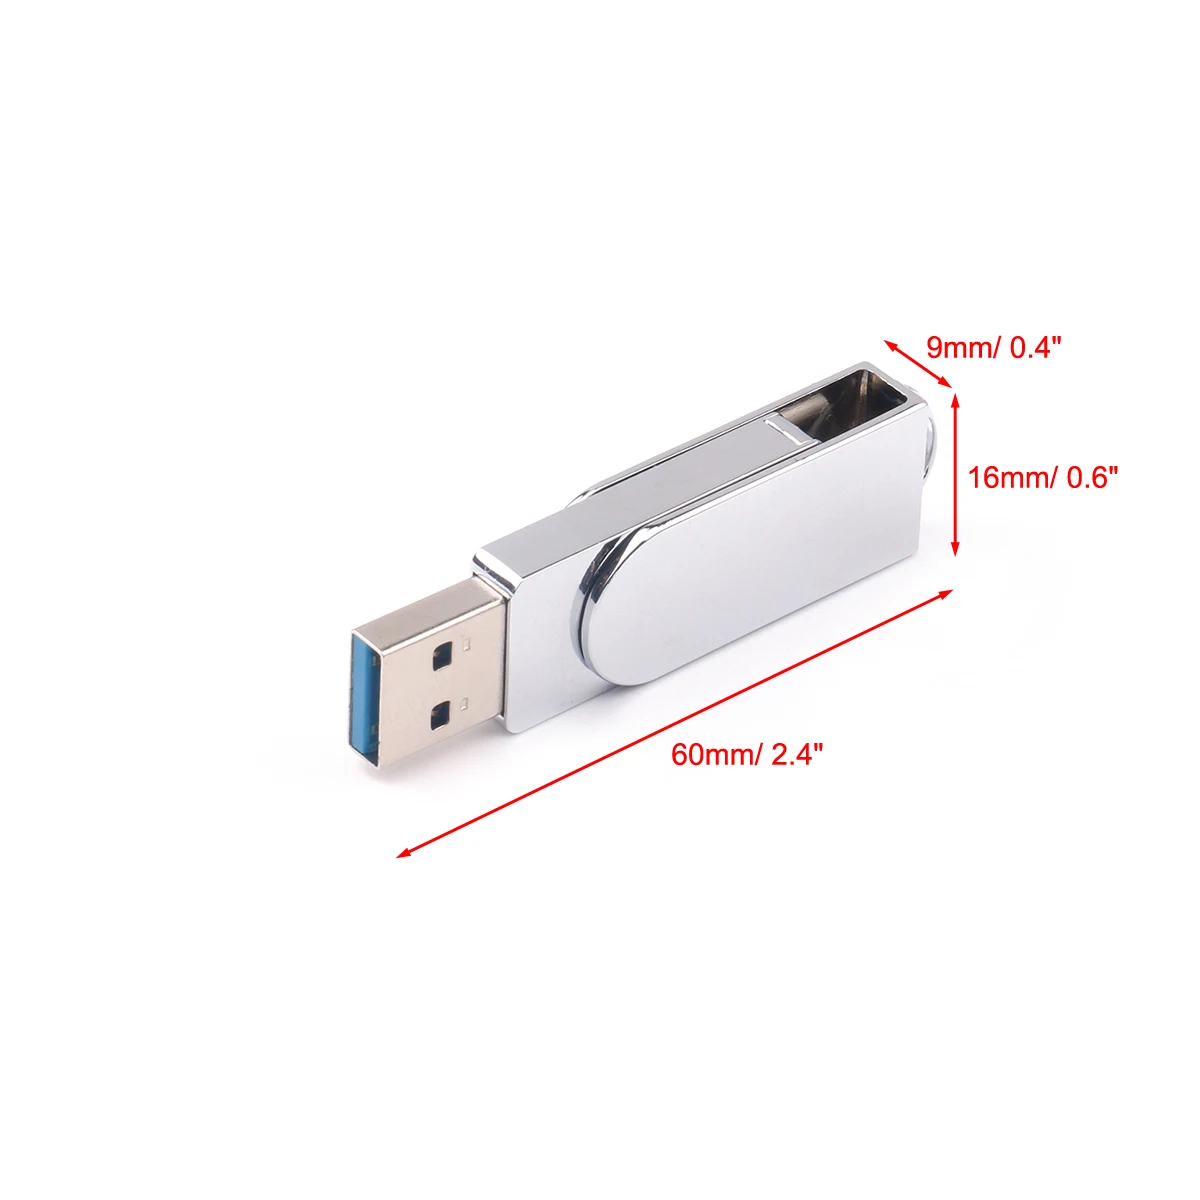 32/64 Гб Тип C металлический поворотный мобильного телефона U диск USB флэш-накопитель OTG USB флэш накопитель для Android телефон компьютер мини-флеш-накопитель флешка